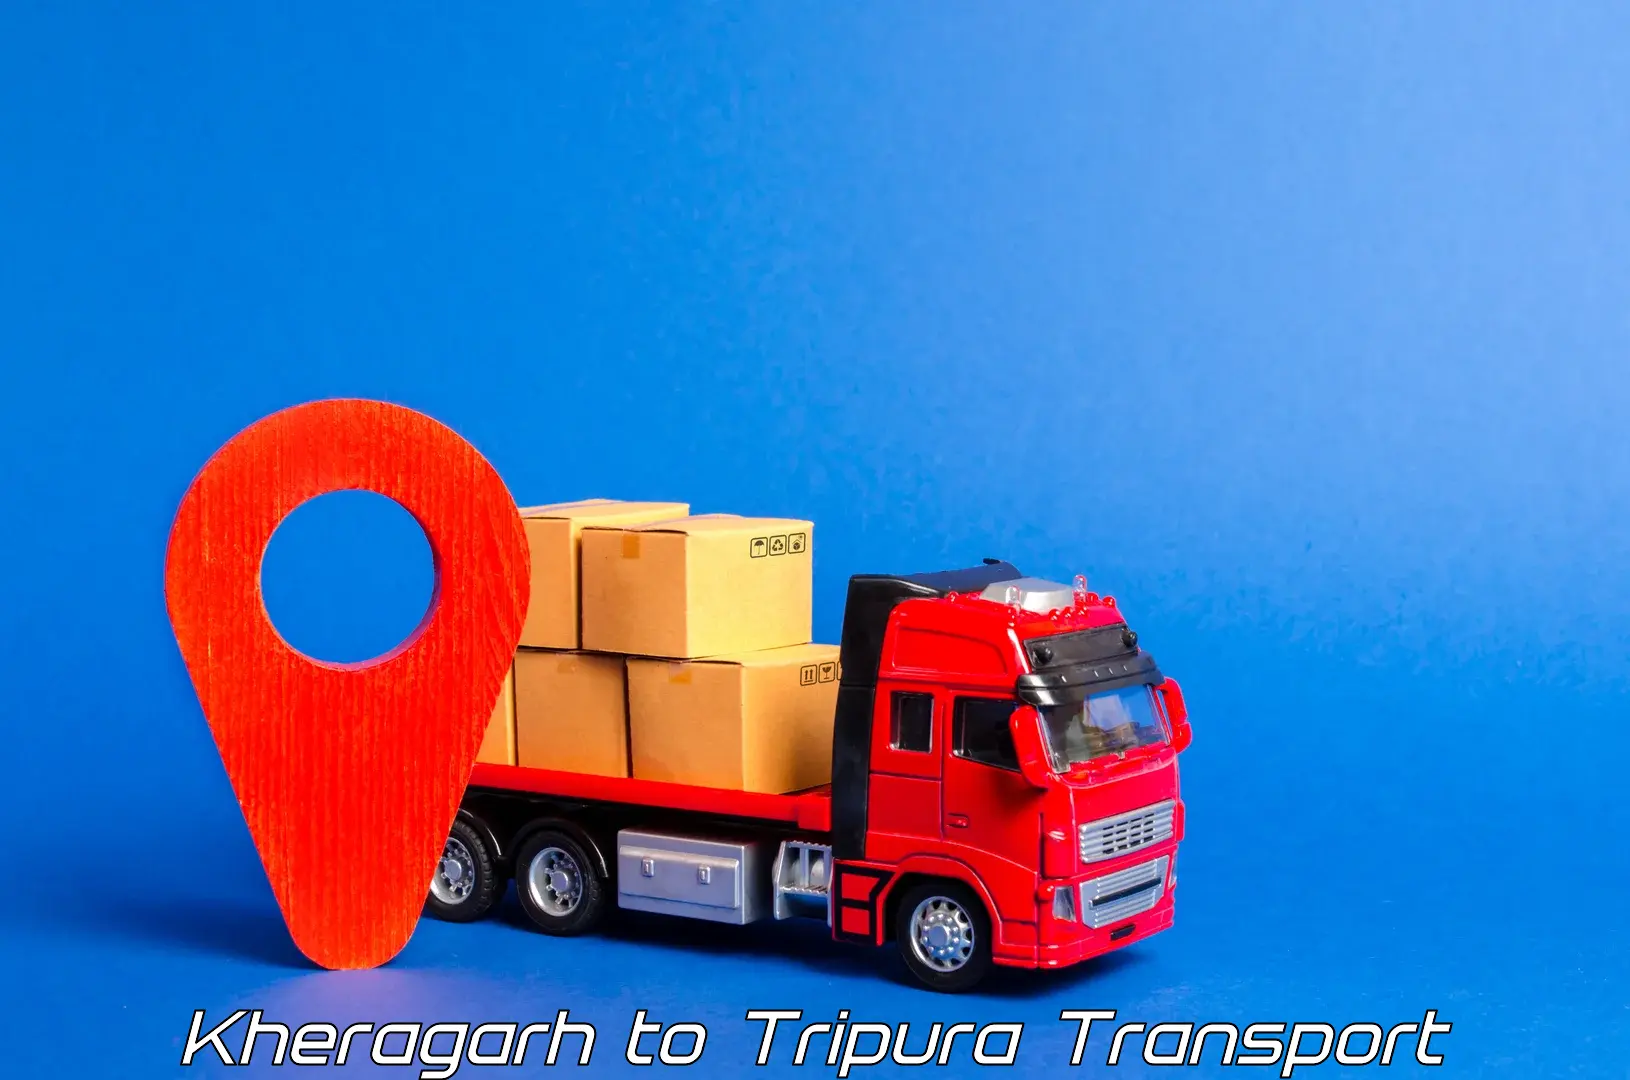 Lorry transport service Kheragarh to IIIT Agartala